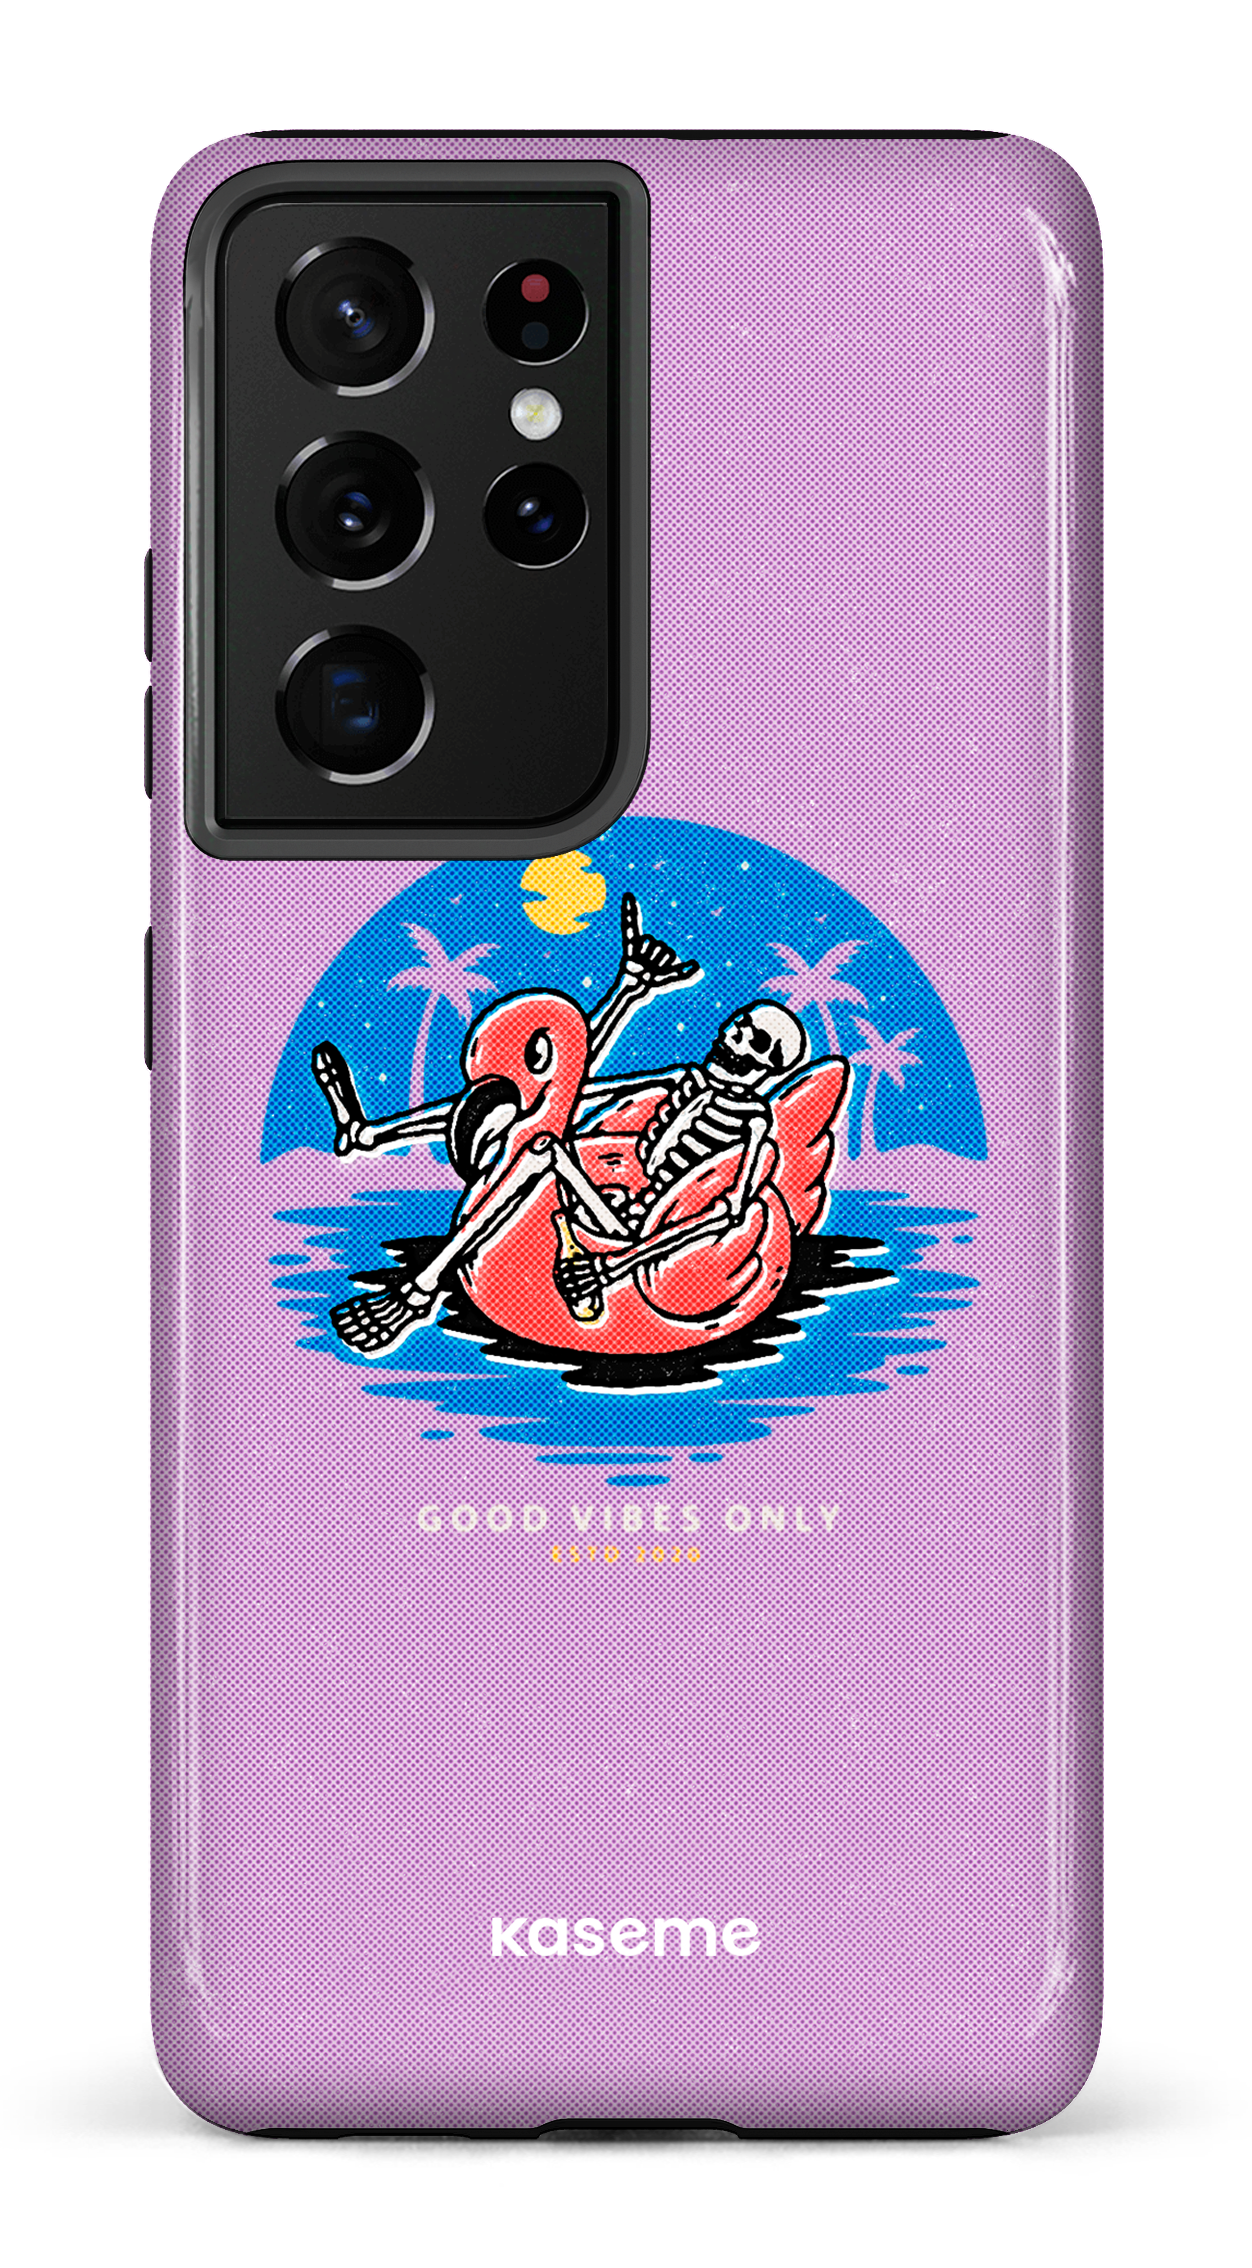 Seaside purple - Galaxy S21 Ultra